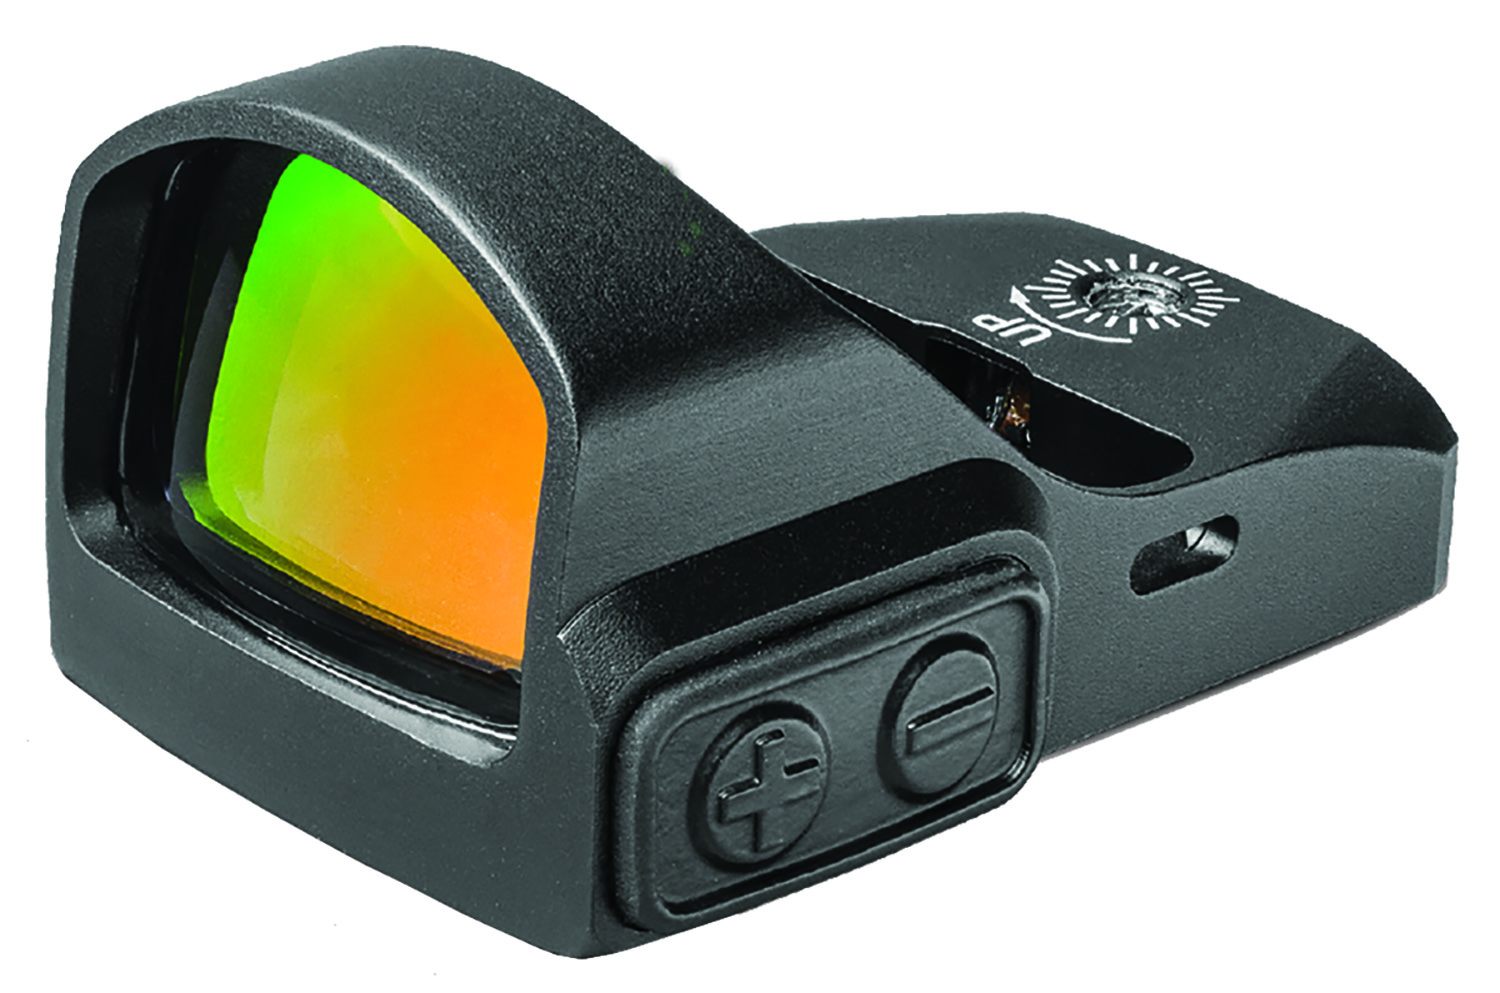 TruGlo TG-8100B3 Tru-Tec Sight & Mount Kit Black 1x 23x17mm 3 MOA Illuminated Red Dot Reticle Fits Remington